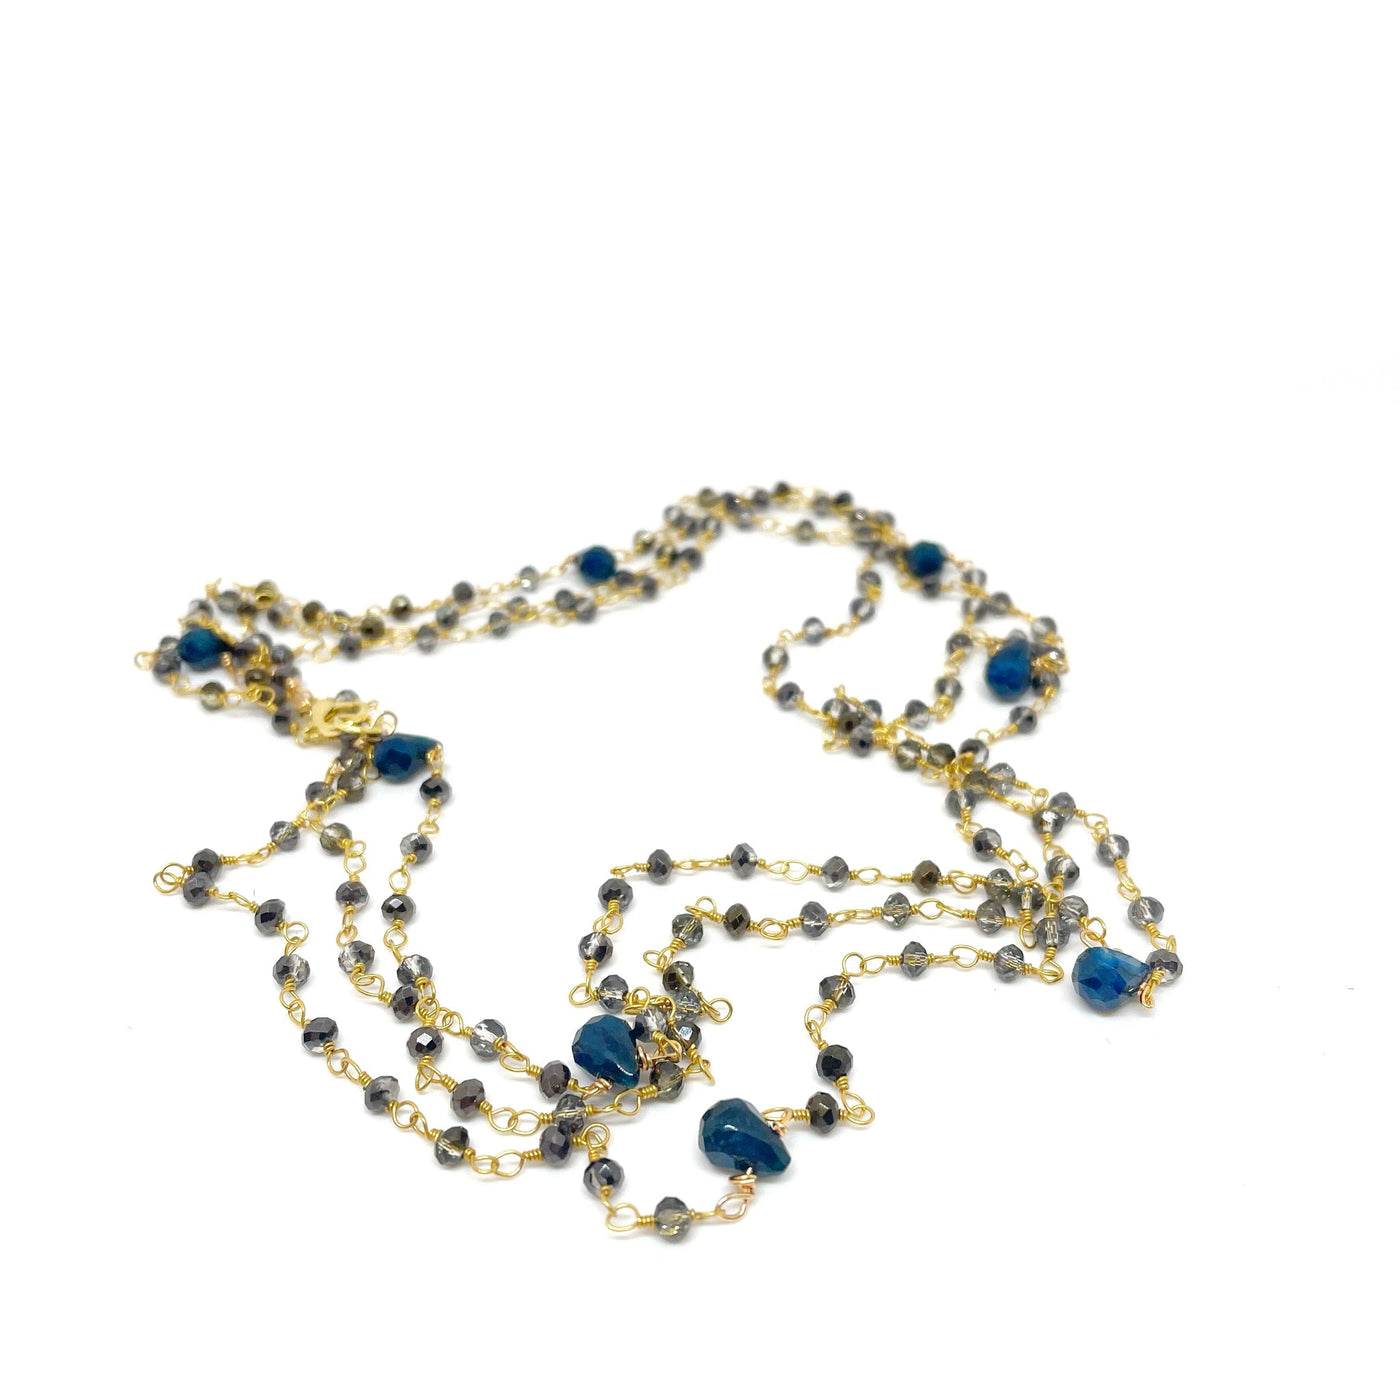 Azzurro Cristallo Super Long Necklace